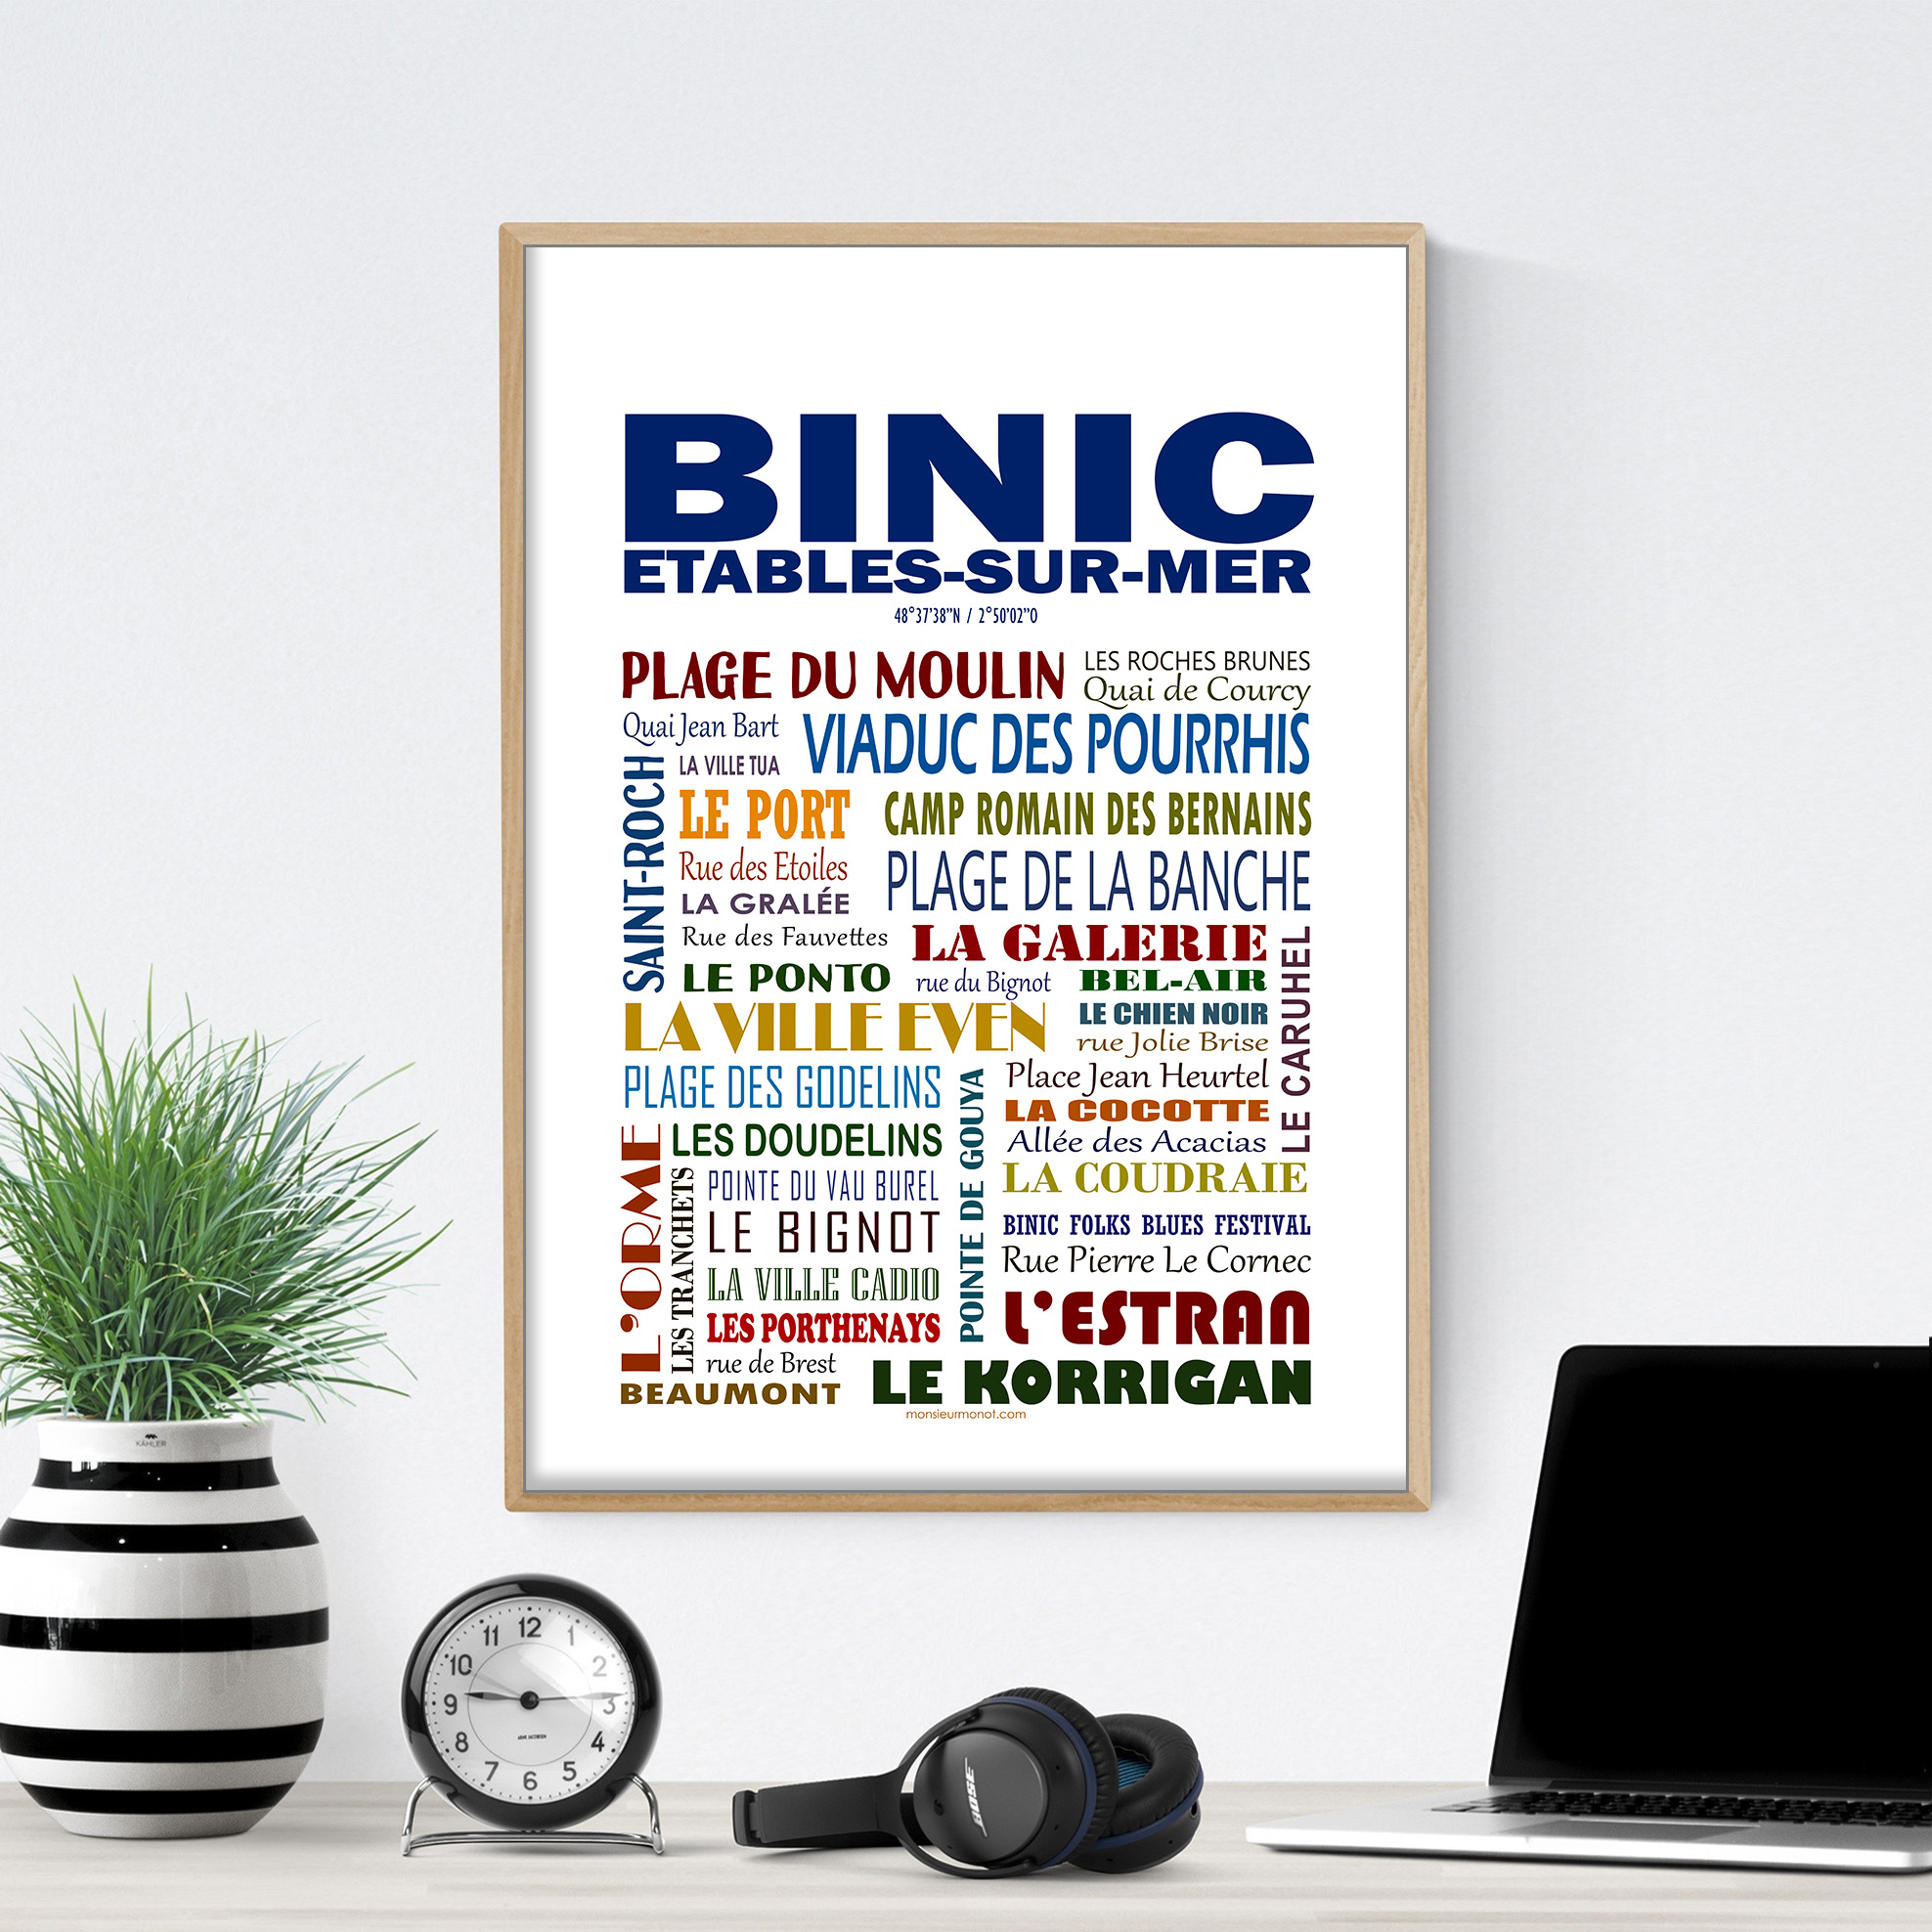 Binic 2